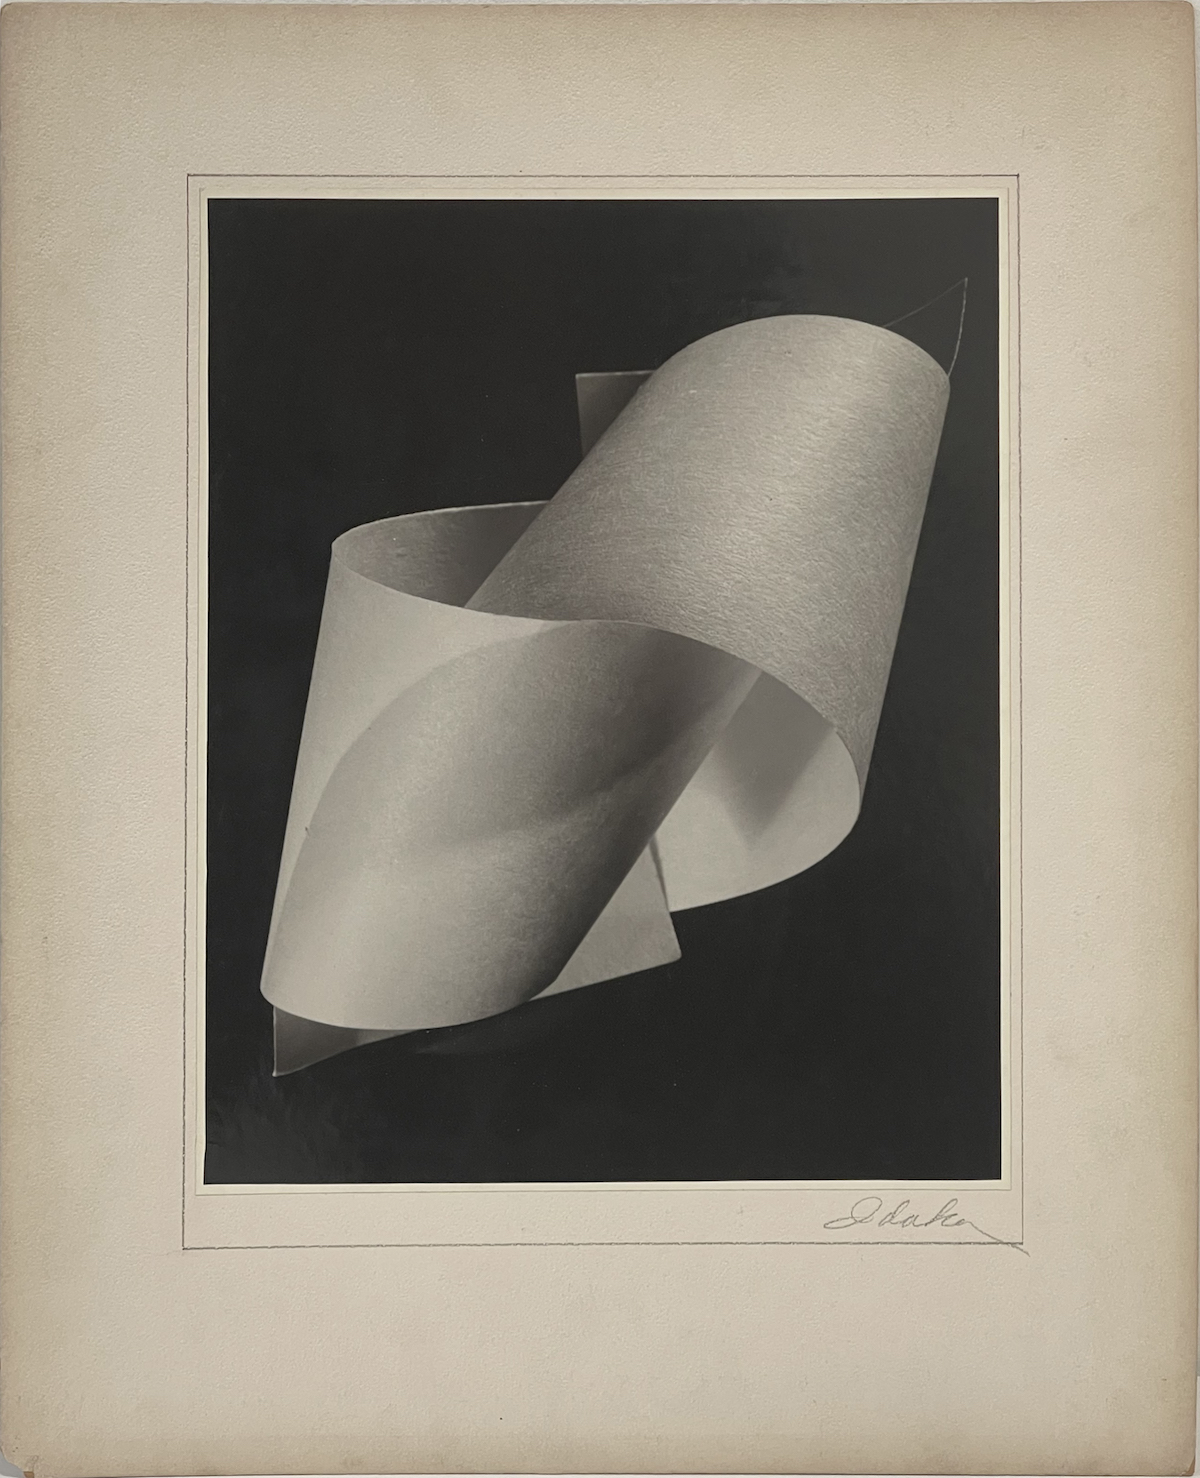 Yuichi Idaka, Untitled 1942-1947, gelatin silver print, 13 7/16 x 10 11/16 inches